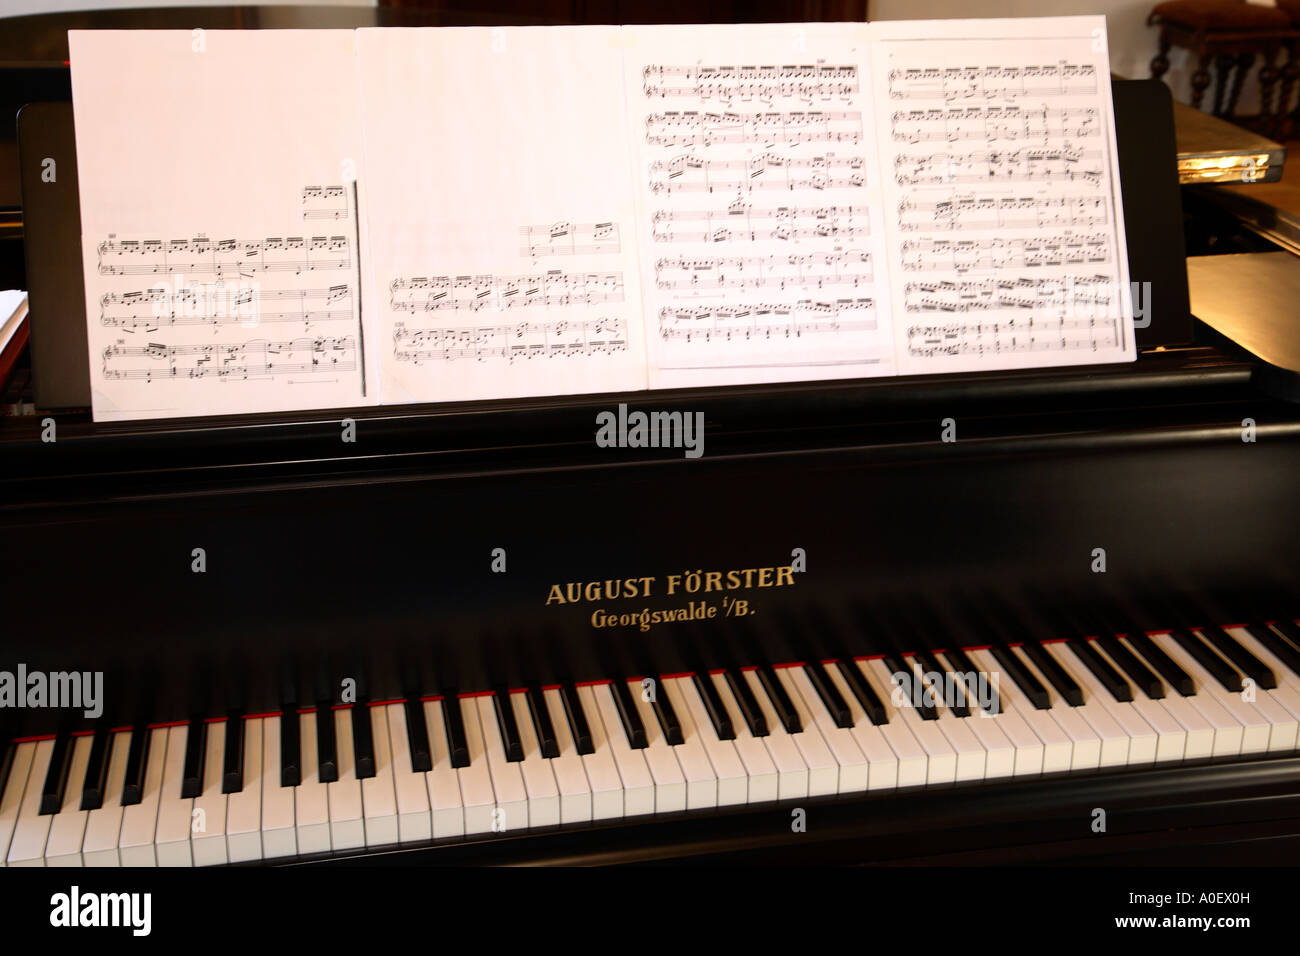 Musik Klavier August Förster Foerster Klavier Grand Piano Noten  Stockfotografie - Alamy